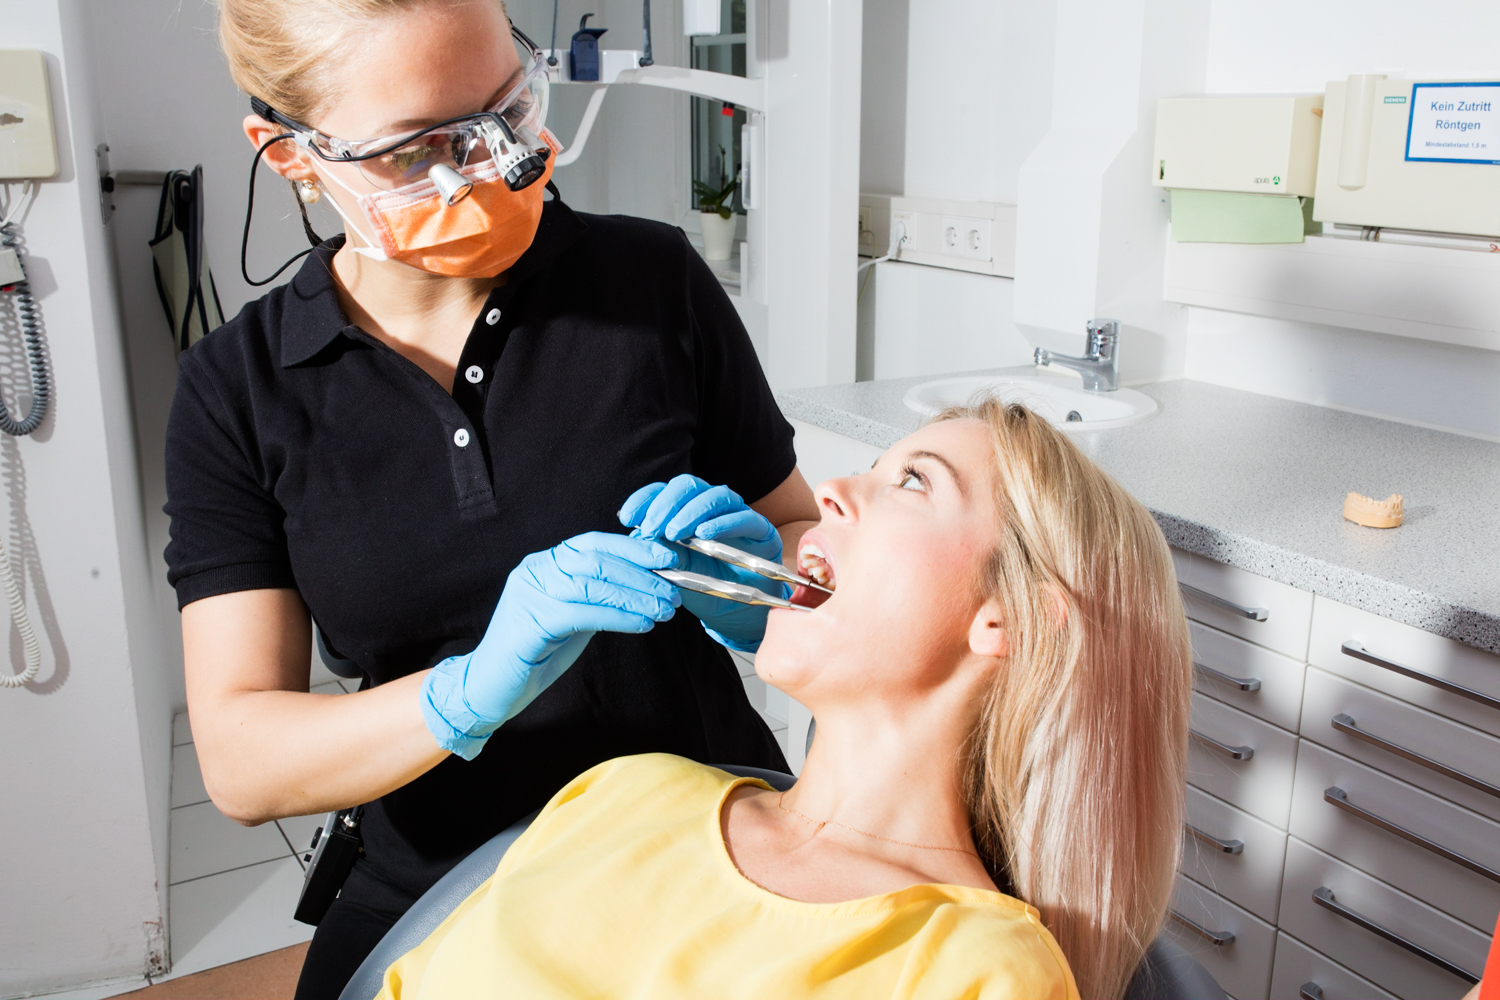 Frauen gehen häufiger zum Zahnarzt